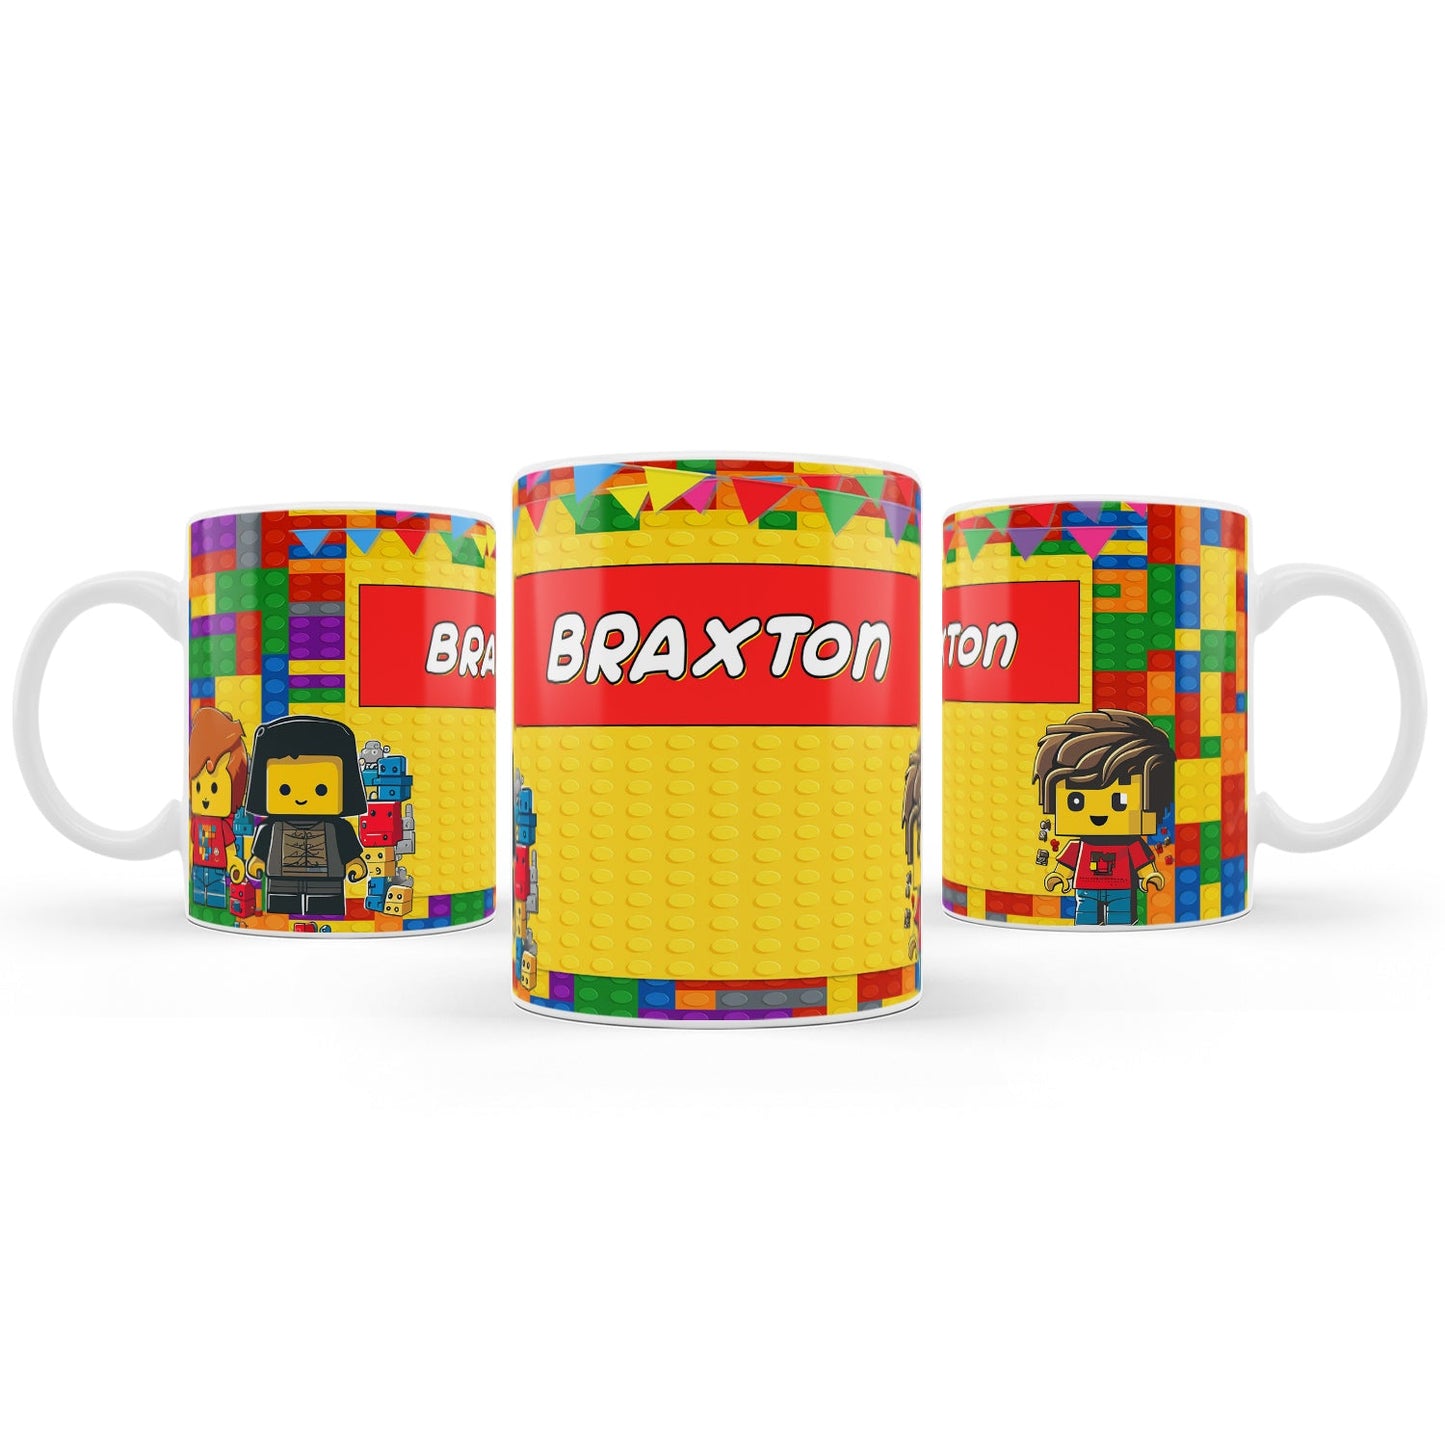 Sublimation mug with a Lego theme